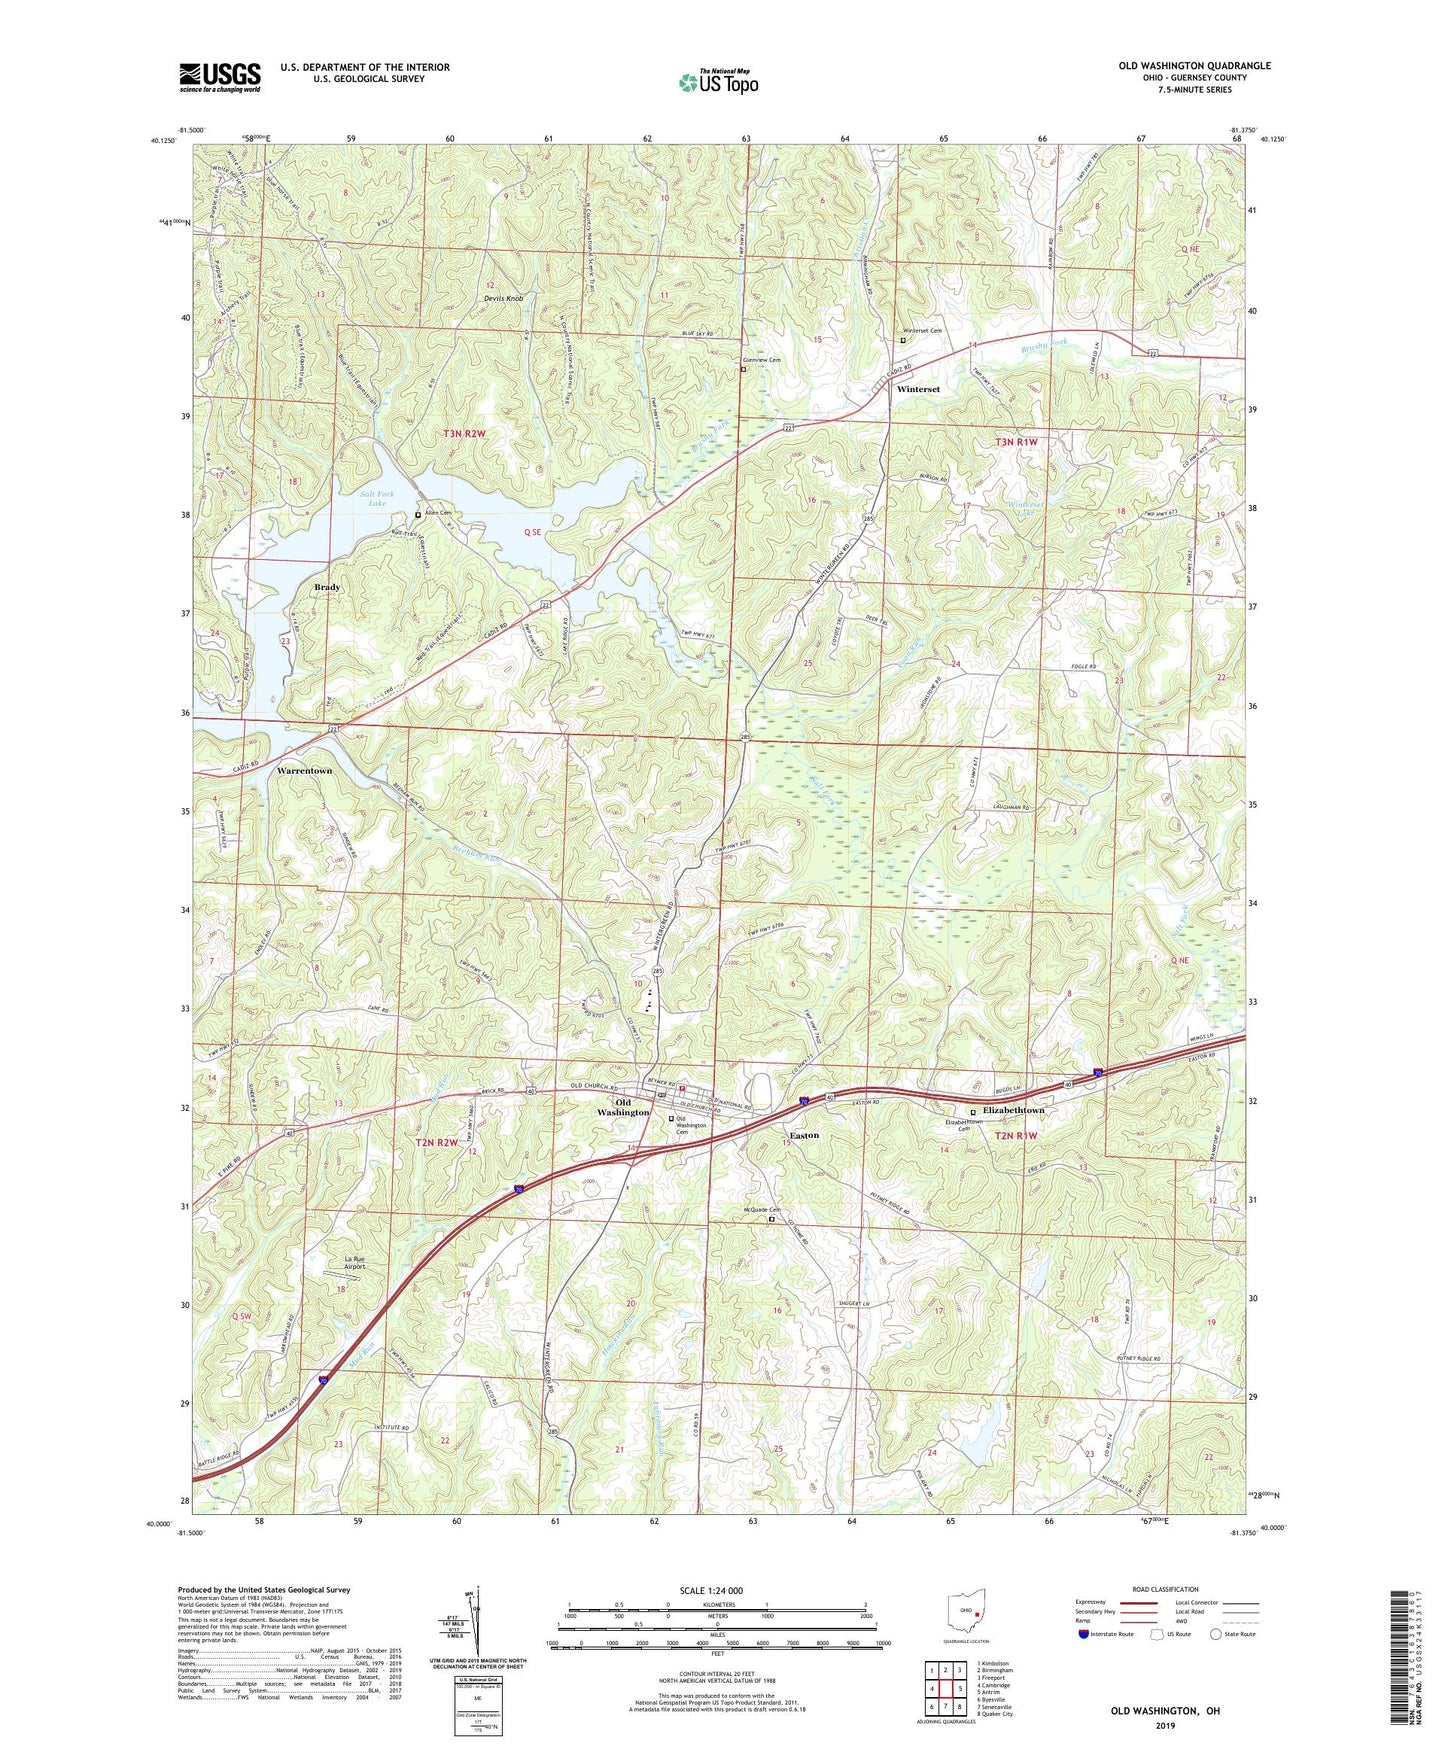 Old Washington Ohio US Topo Map Image